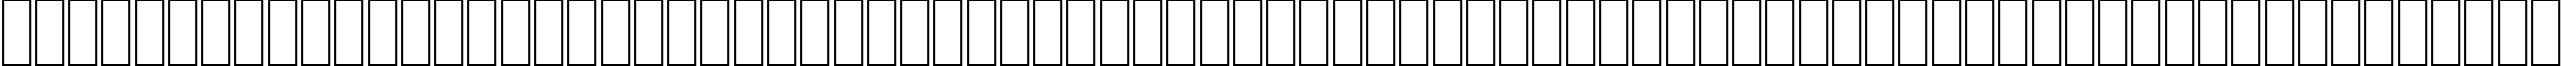 Пример написания английского алфавита шрифтом AGA Granada Regular